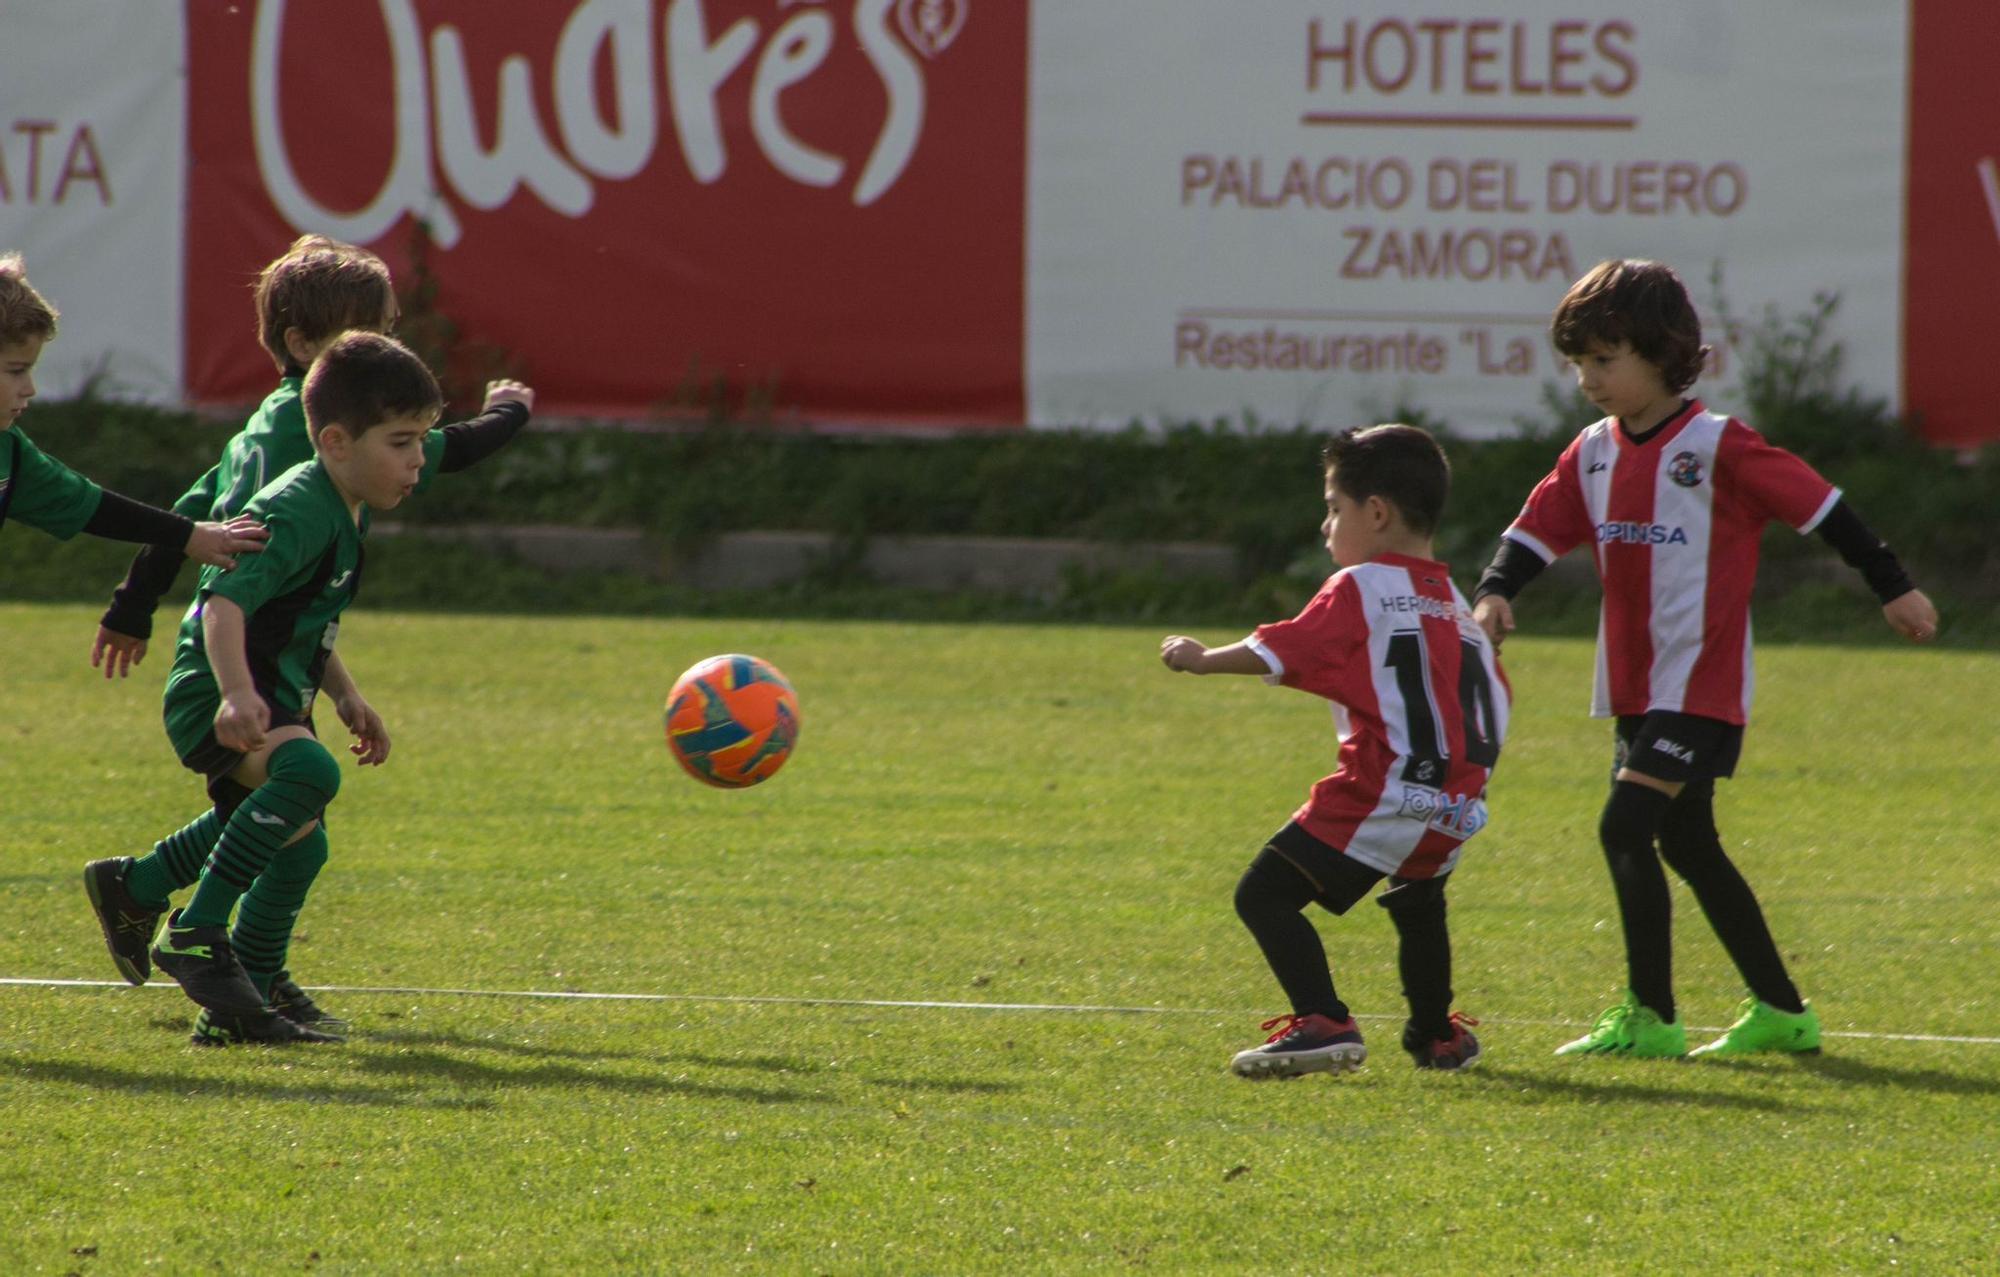 El Zamora CF celebra el Día de la Juventud